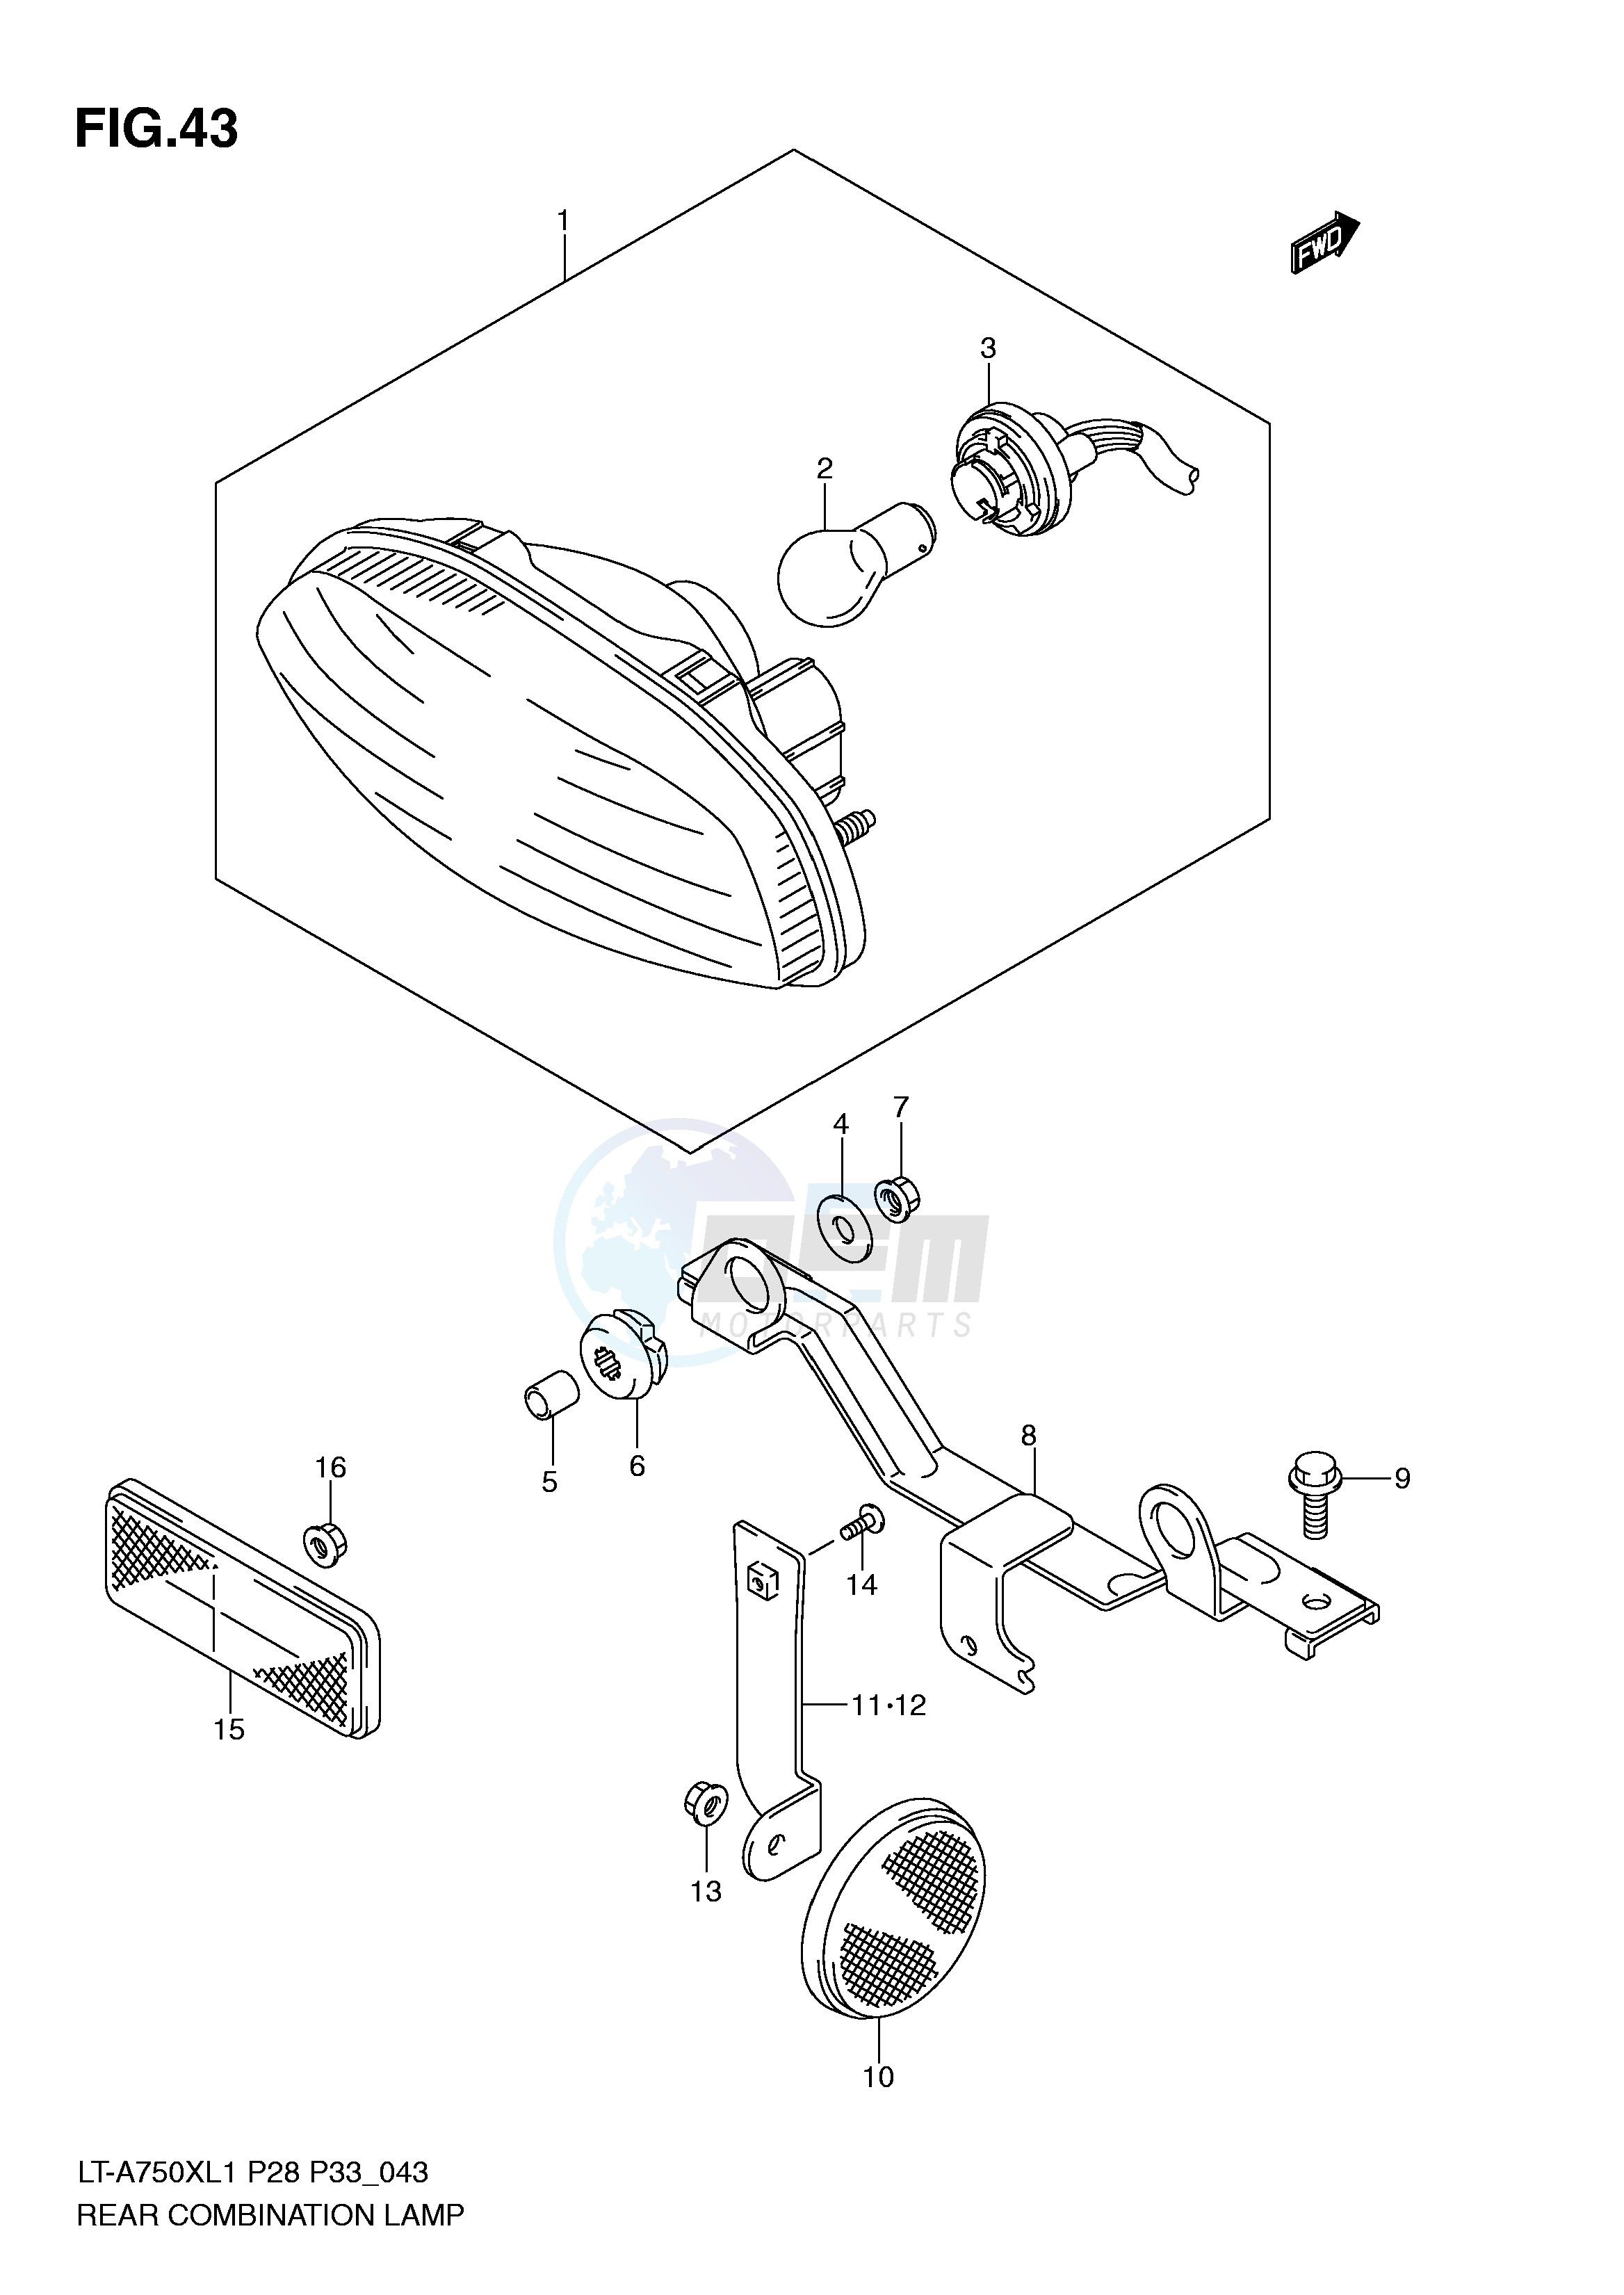 REAR COMBINATION LAMP (LT-A750XL1 P28) image